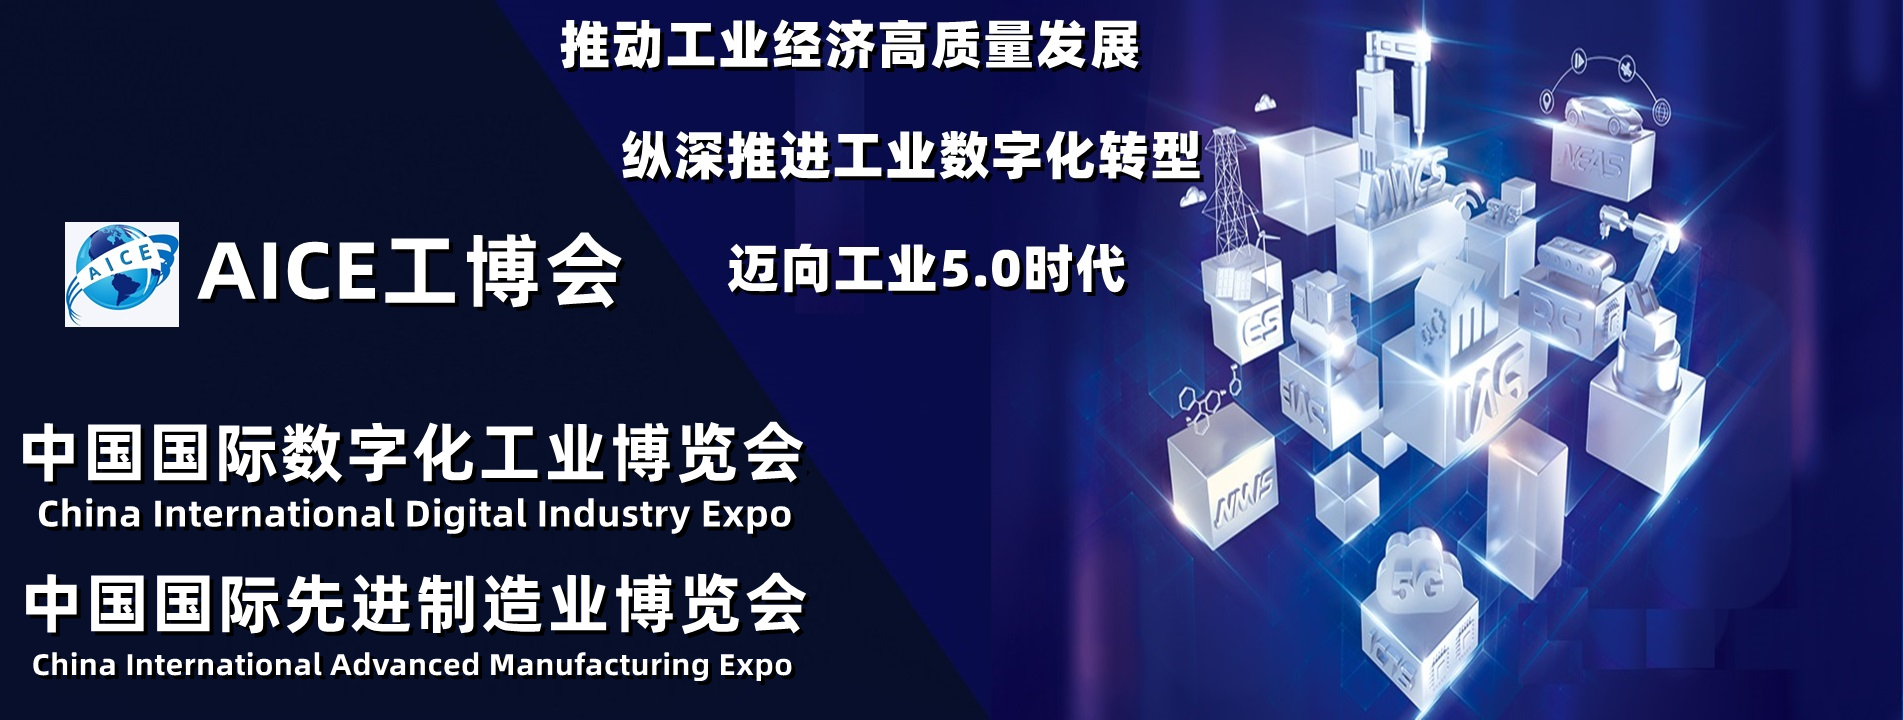 2022第十五届南京国际数字化工业博览会